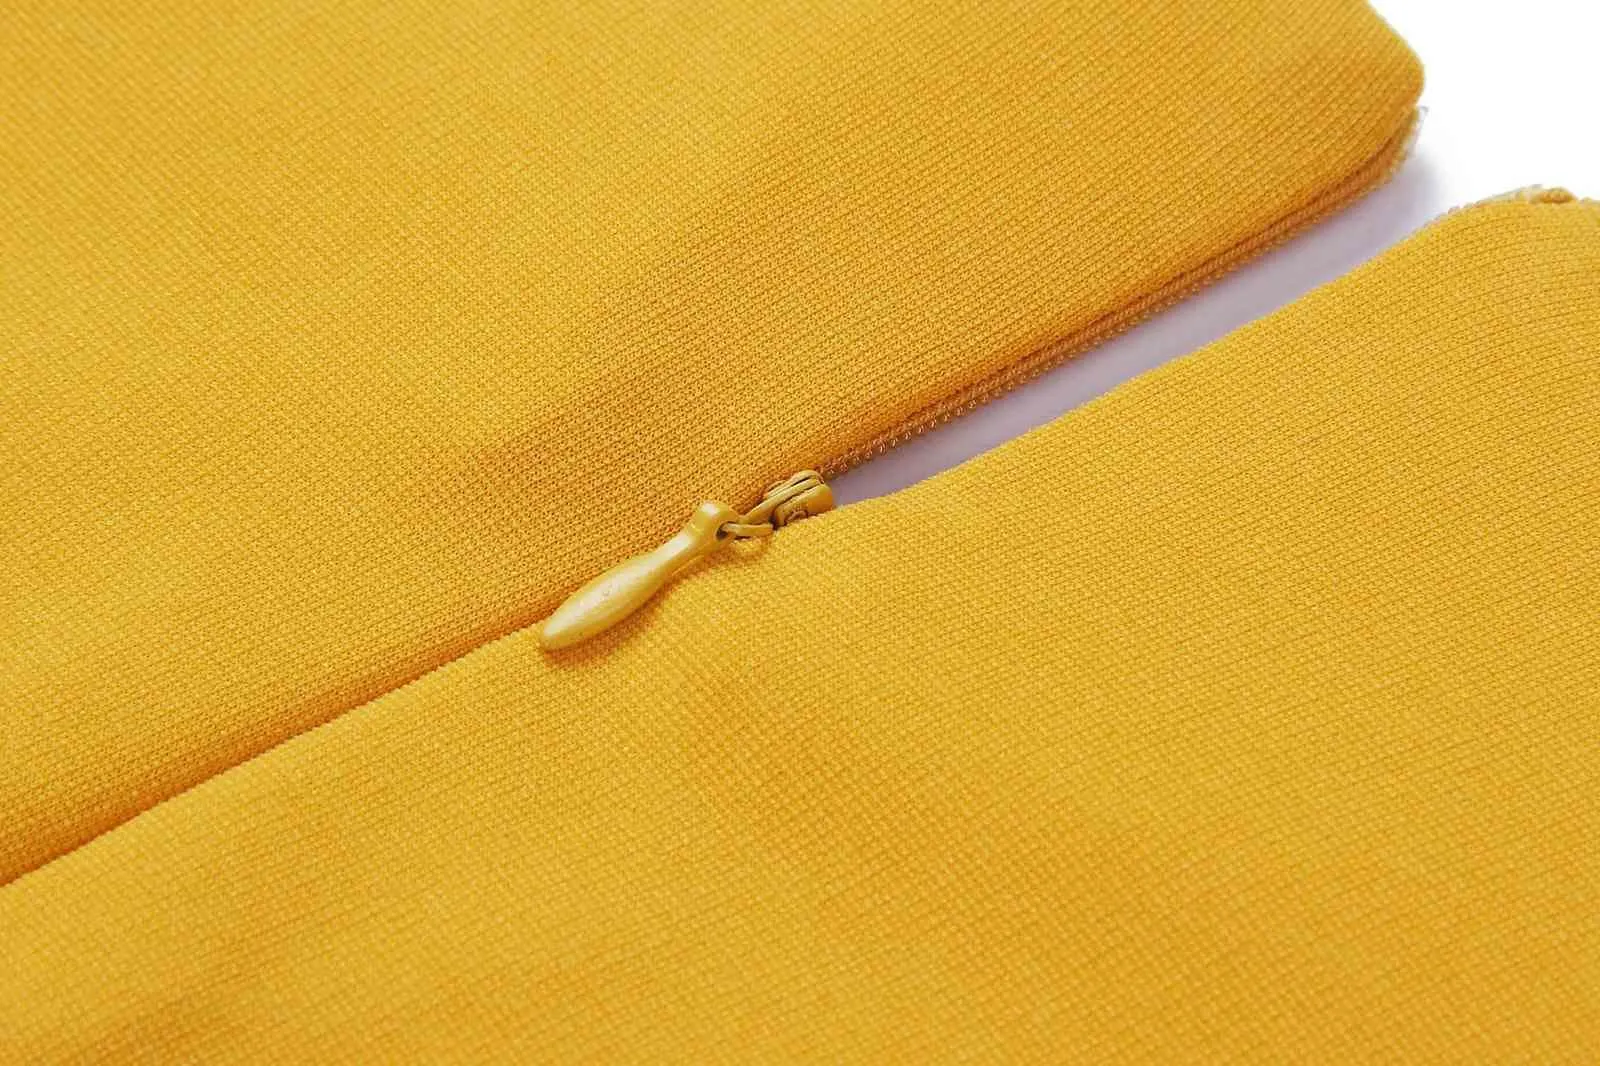 Robe élastique jaune grande taille femmes robes moulantes bureau dames travail taille ceinture modeste chic mode africaine XXXL XL 210416